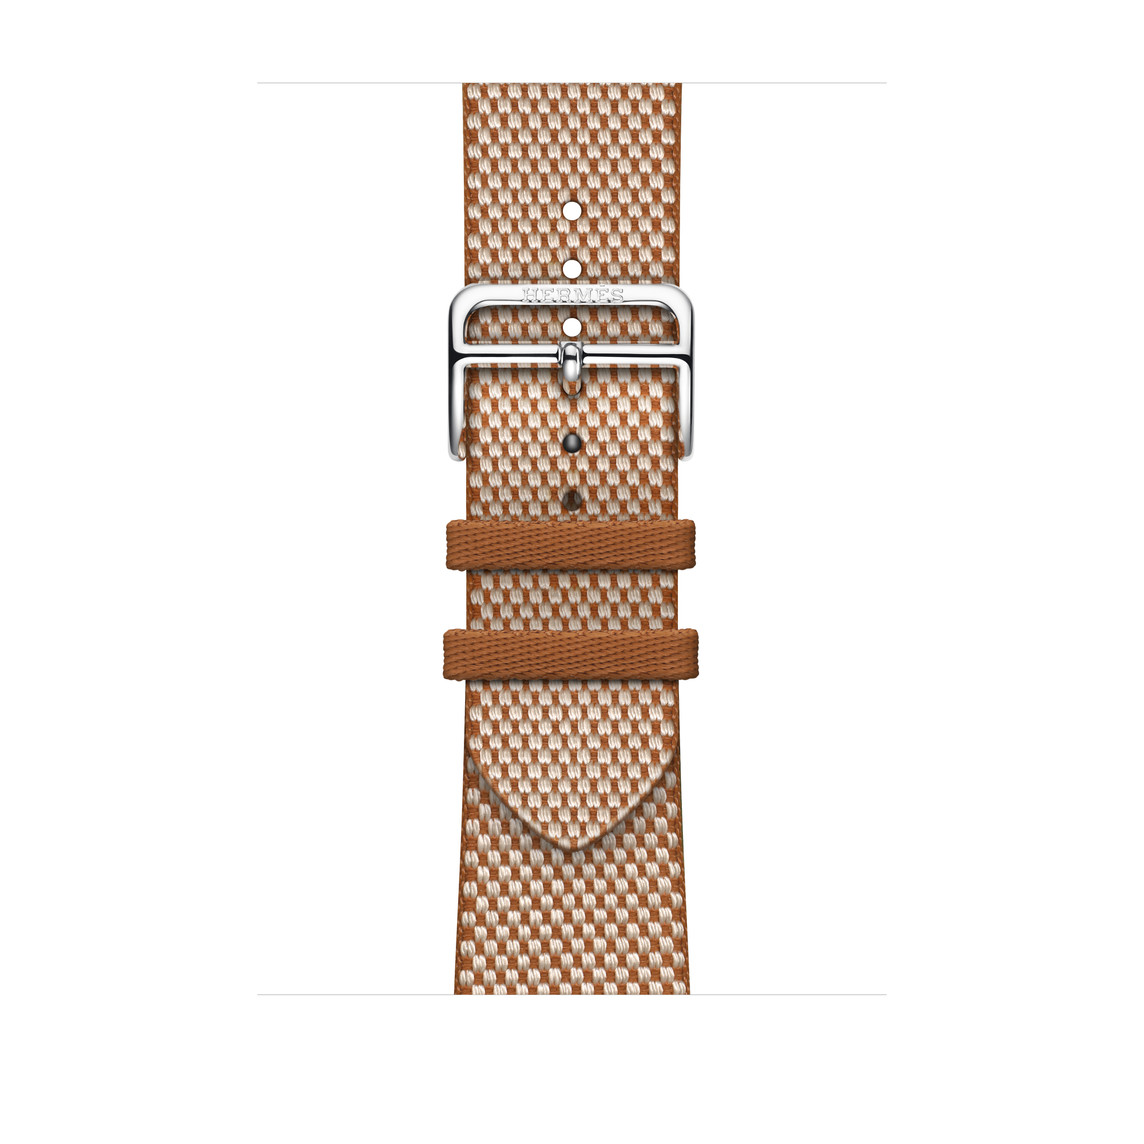 Toile H Single Tour Armband in Gold und Écru (Beige), Textilgewebe mit silberner Schließe aus Edelstahl.